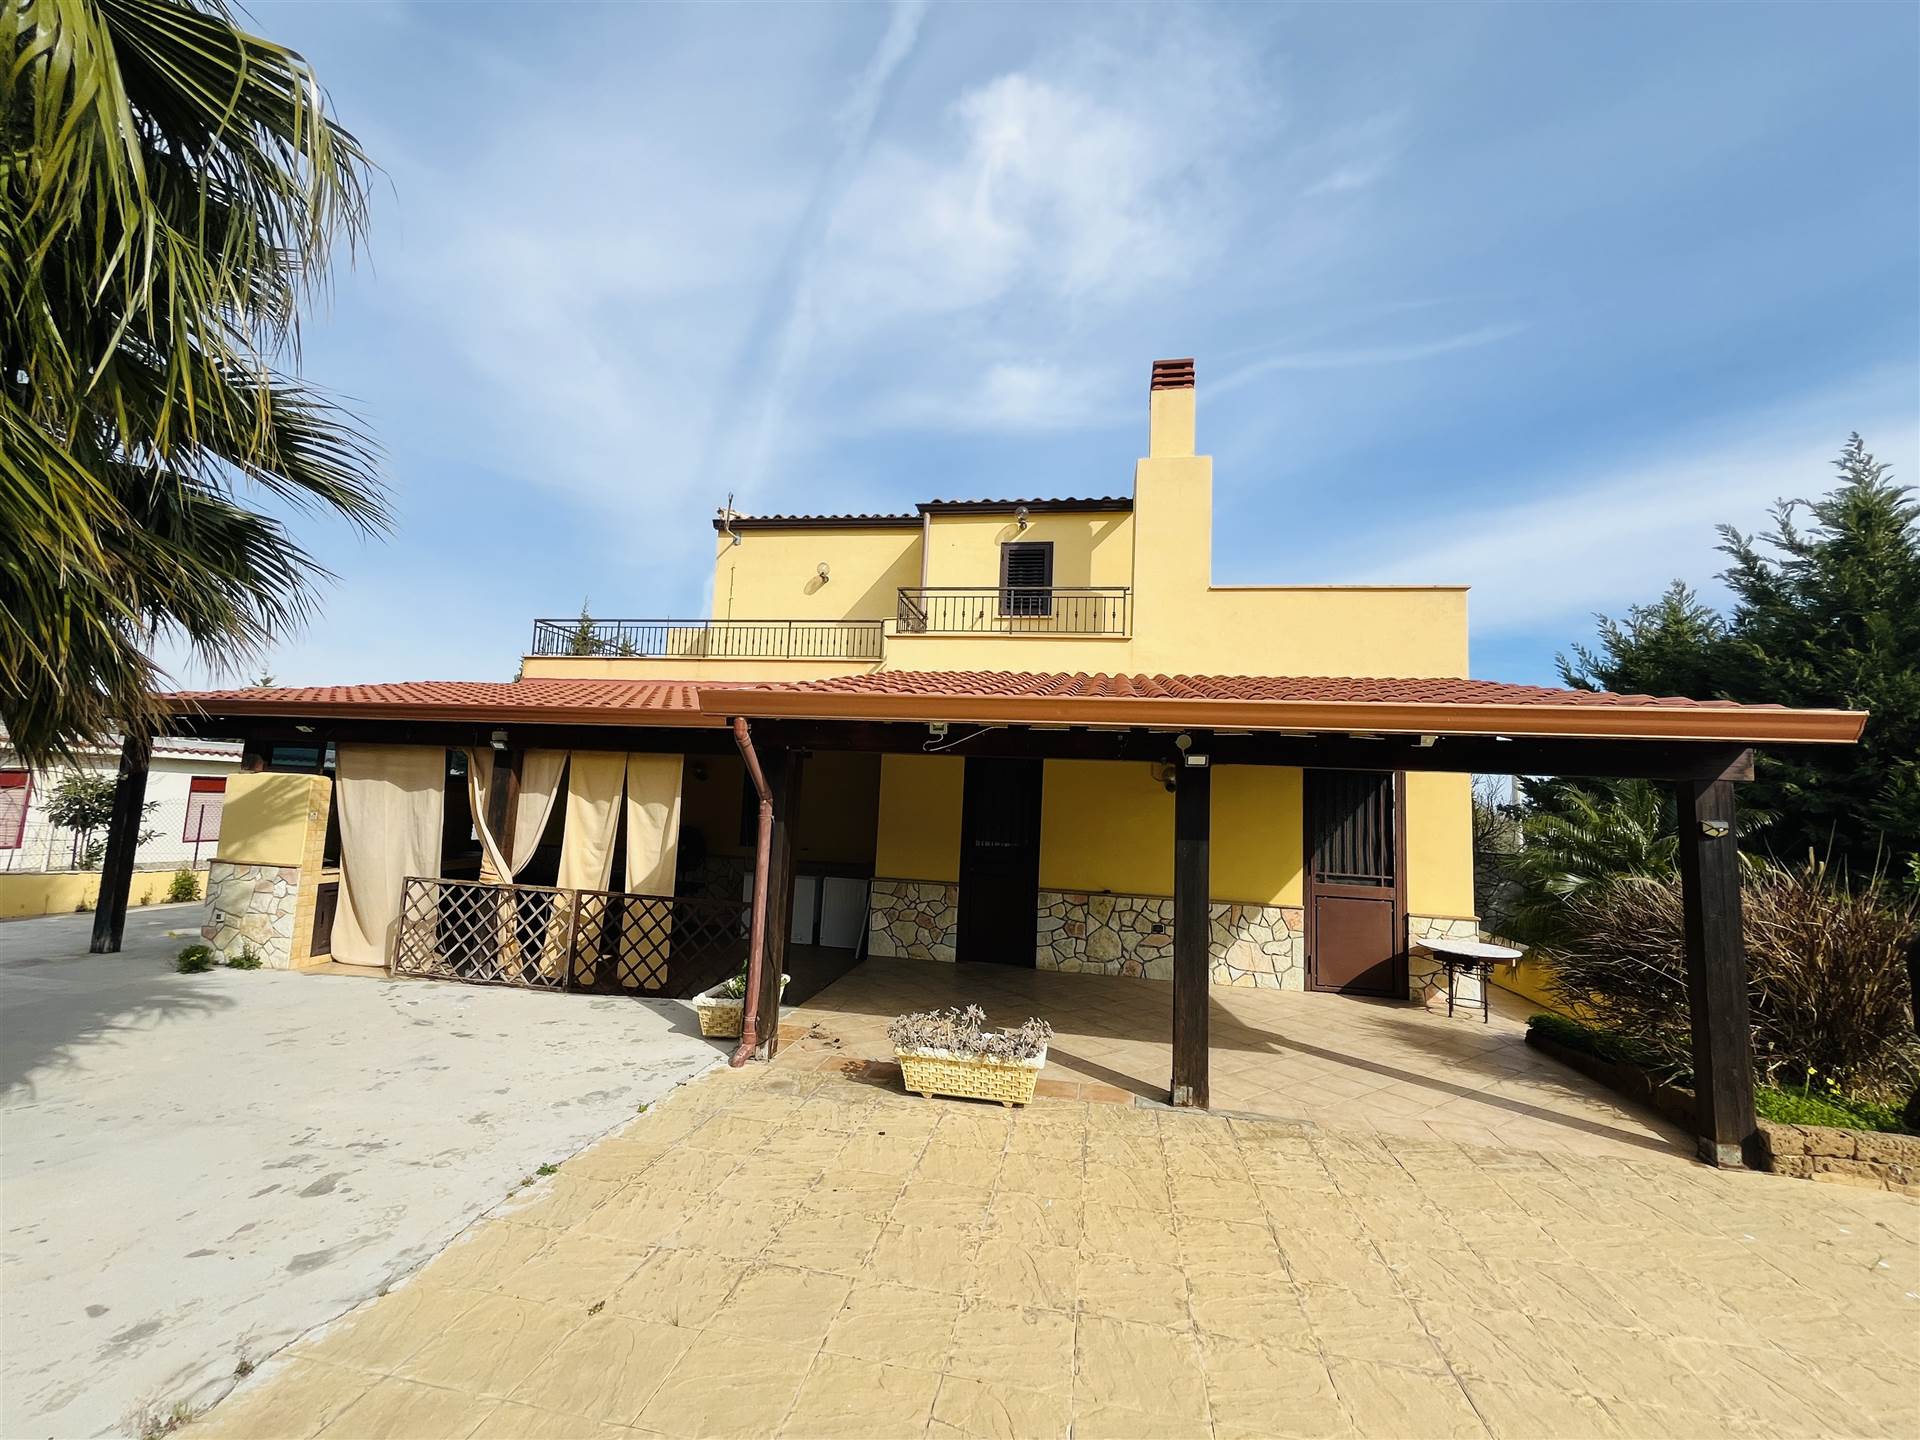 Villa Bifamiliare in vendita a Altavilla Milicia, 6 locali, zona Località: SPERONE, prezzo € 195.000 | PortaleAgenzieImmobiliari.it